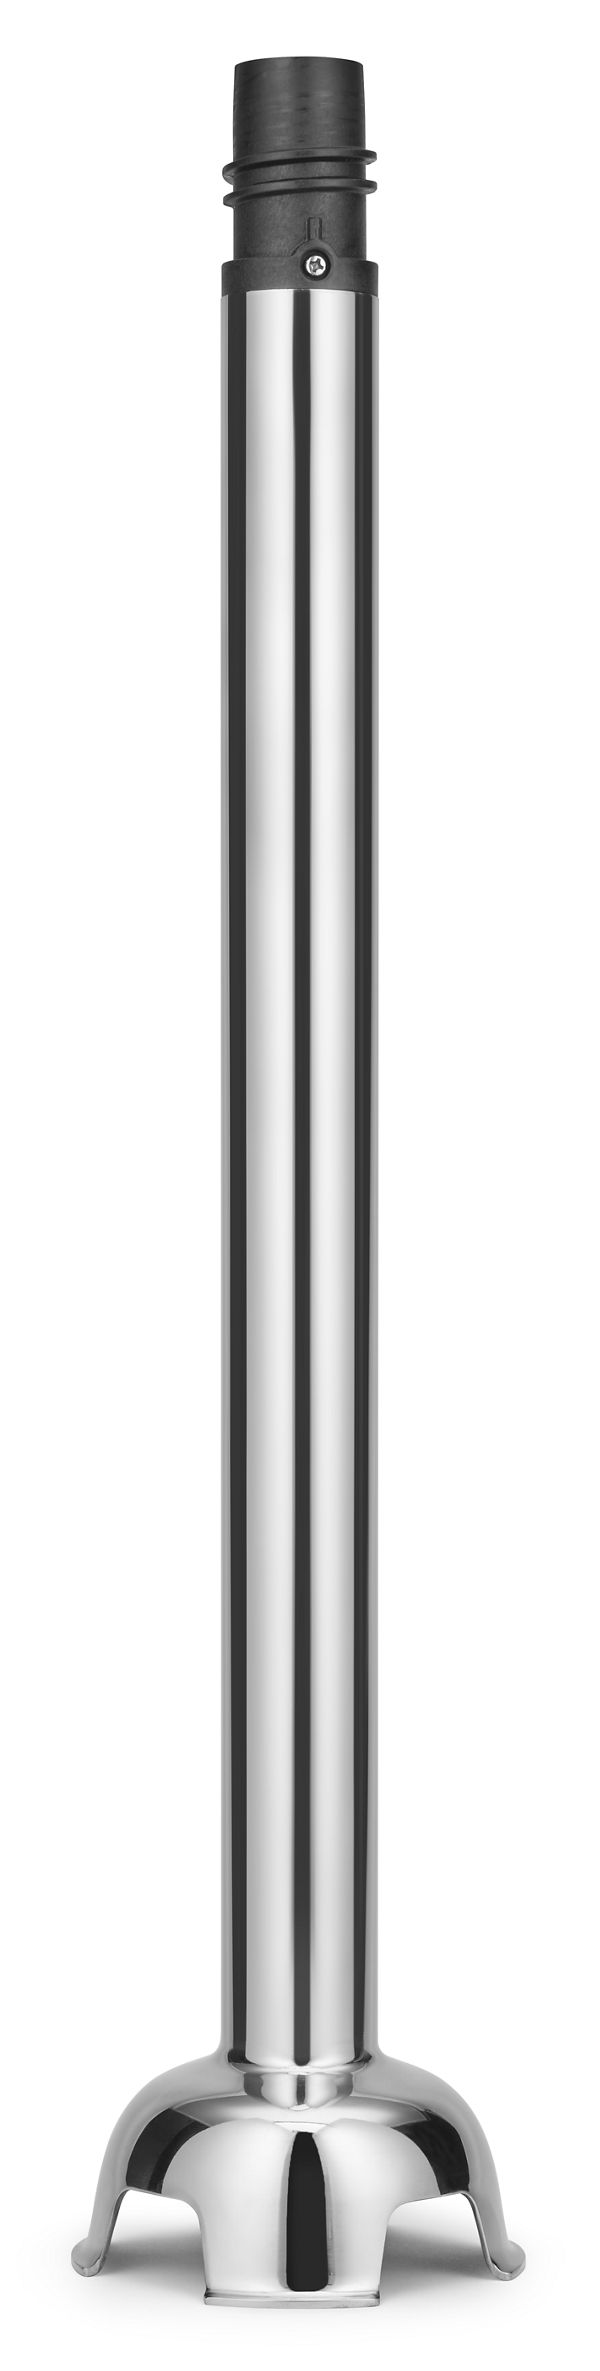 12" Blending Arm for Commercial® 400 Series Immersion Blender